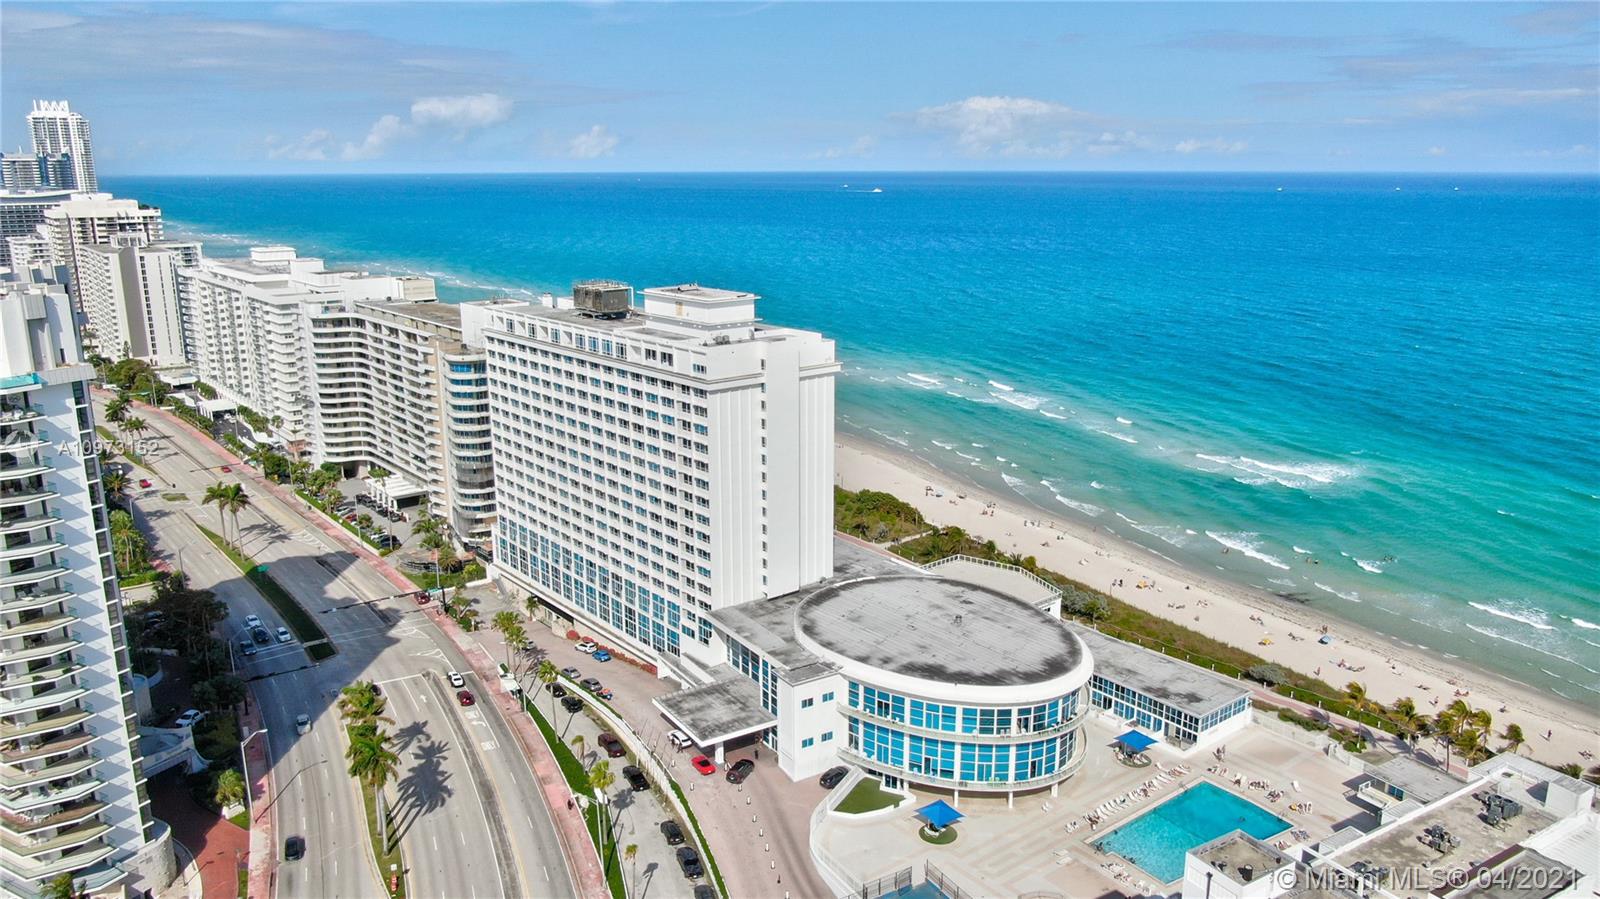 Castle Beach Club Unit #1205 Condo for Sale in Mid-Beach - Miami Beach